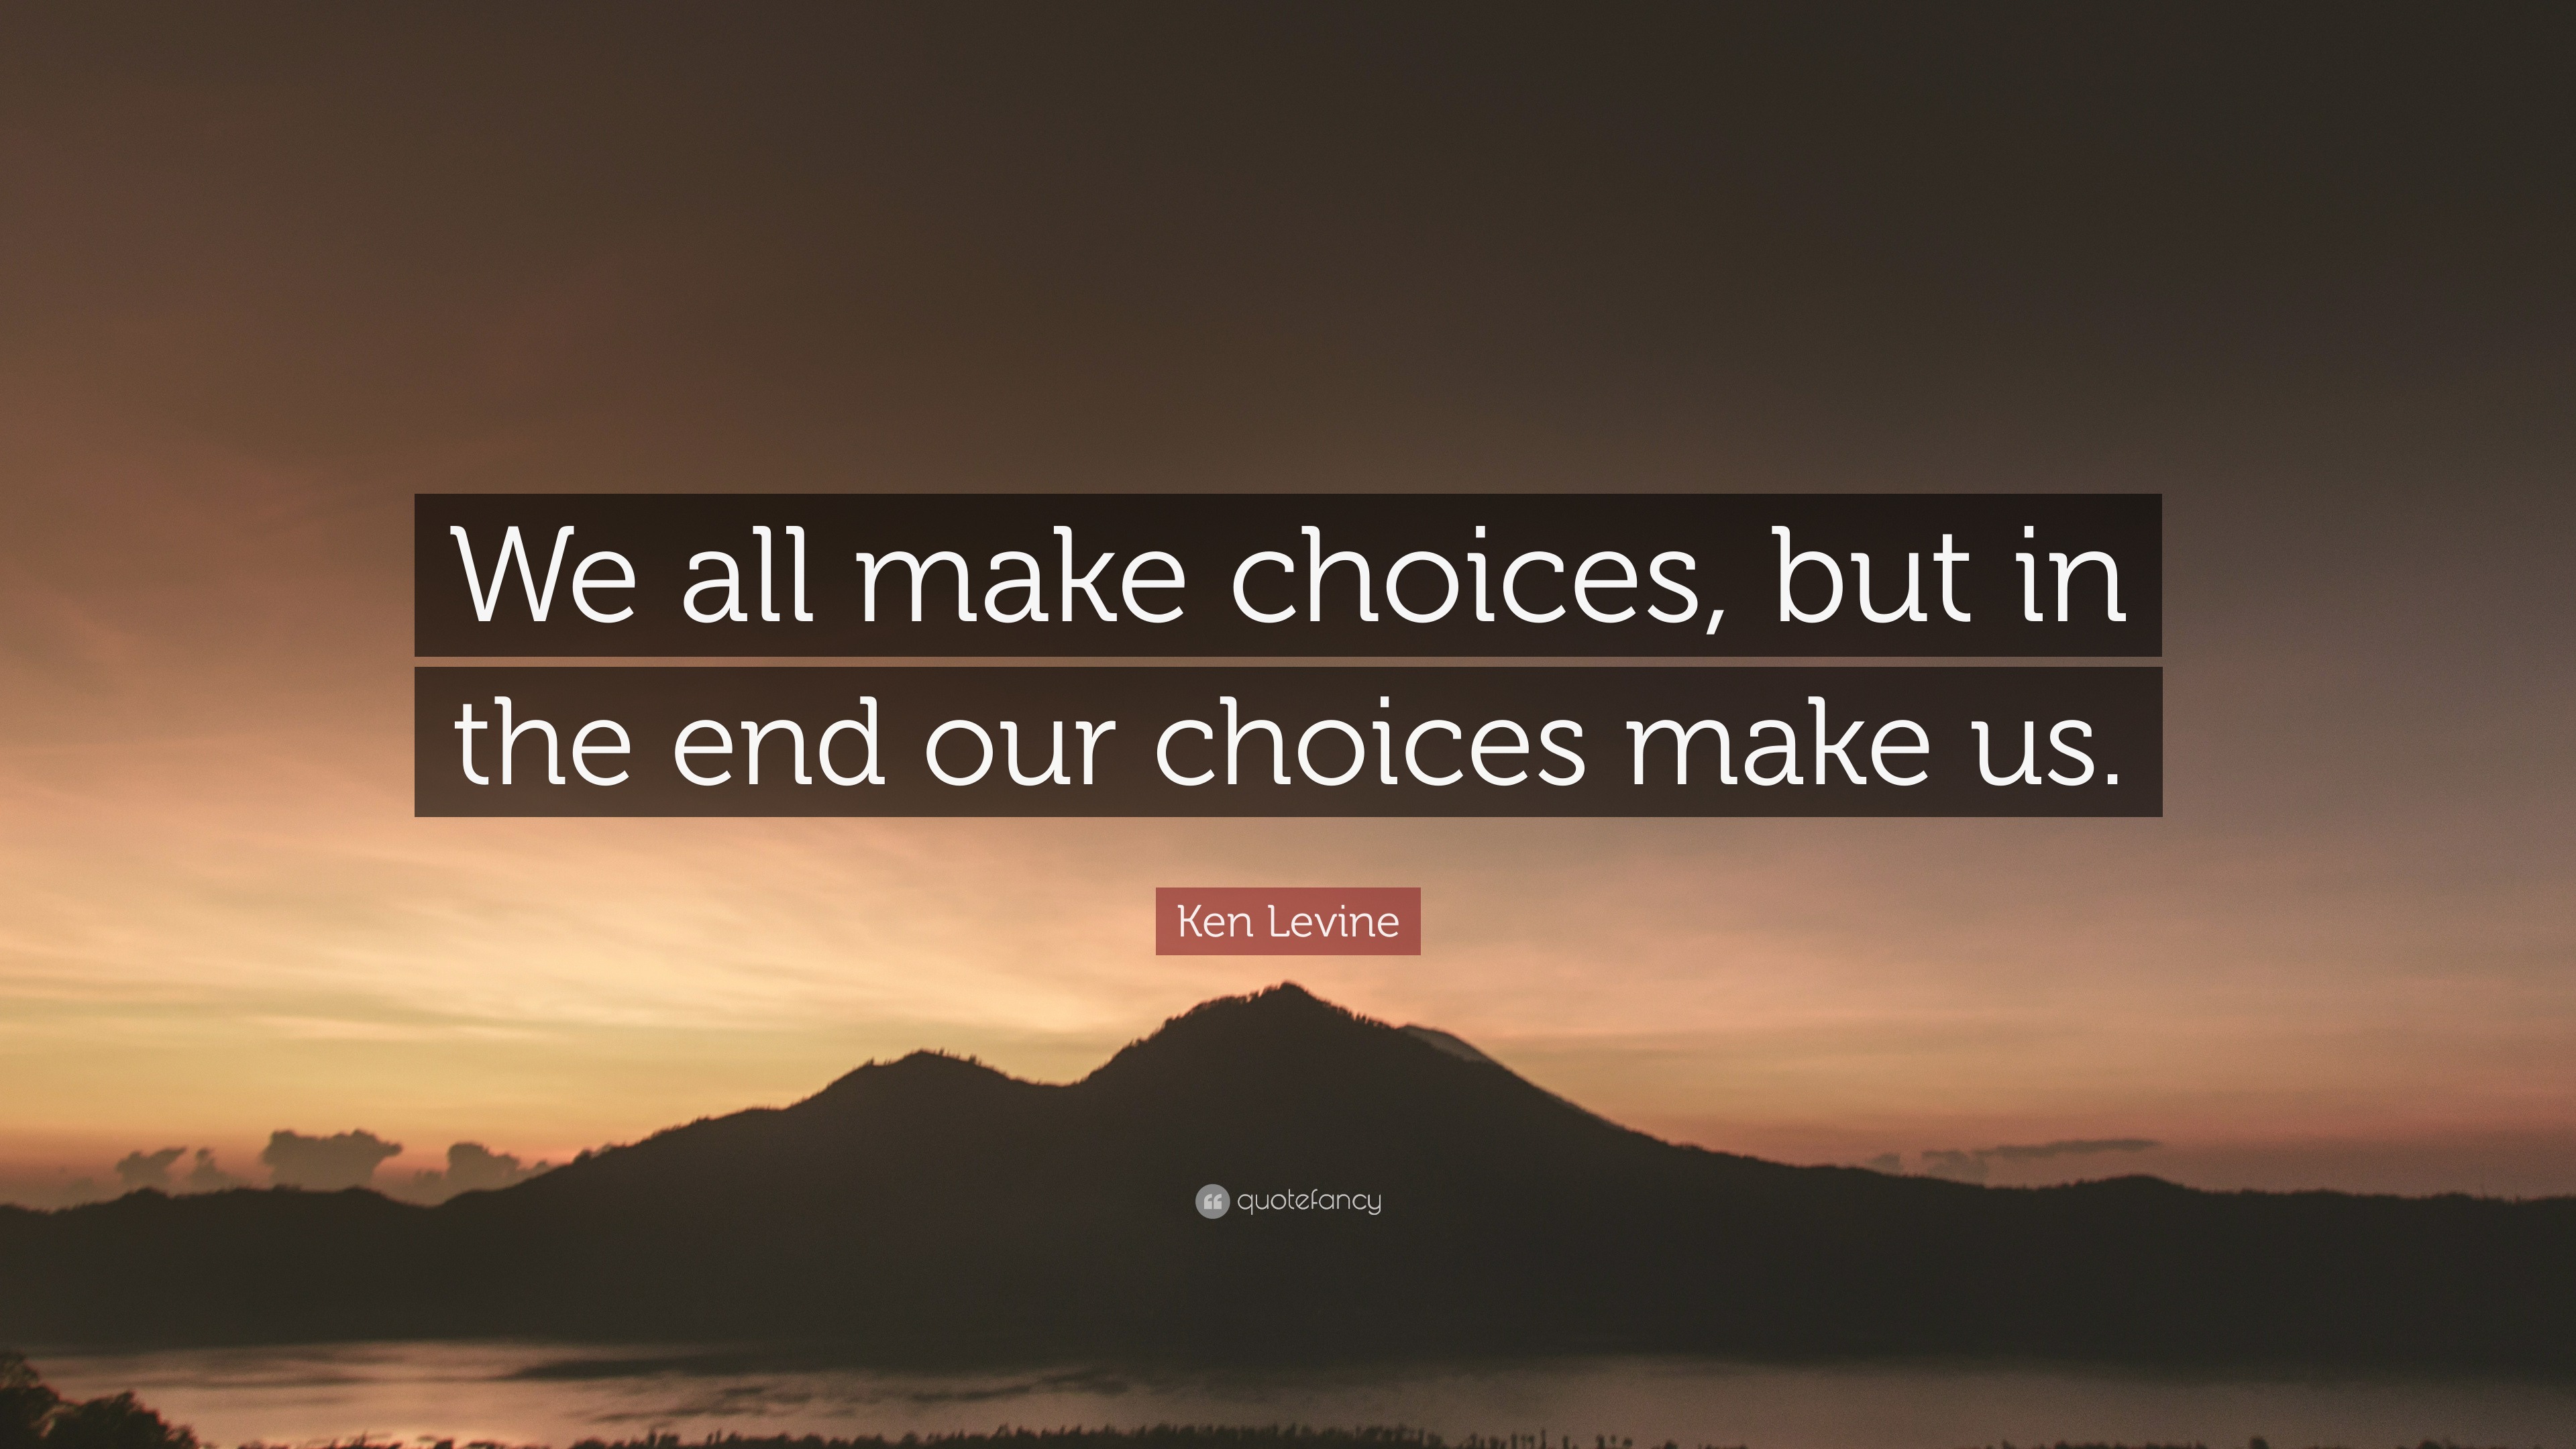 too many choices make us unhappy